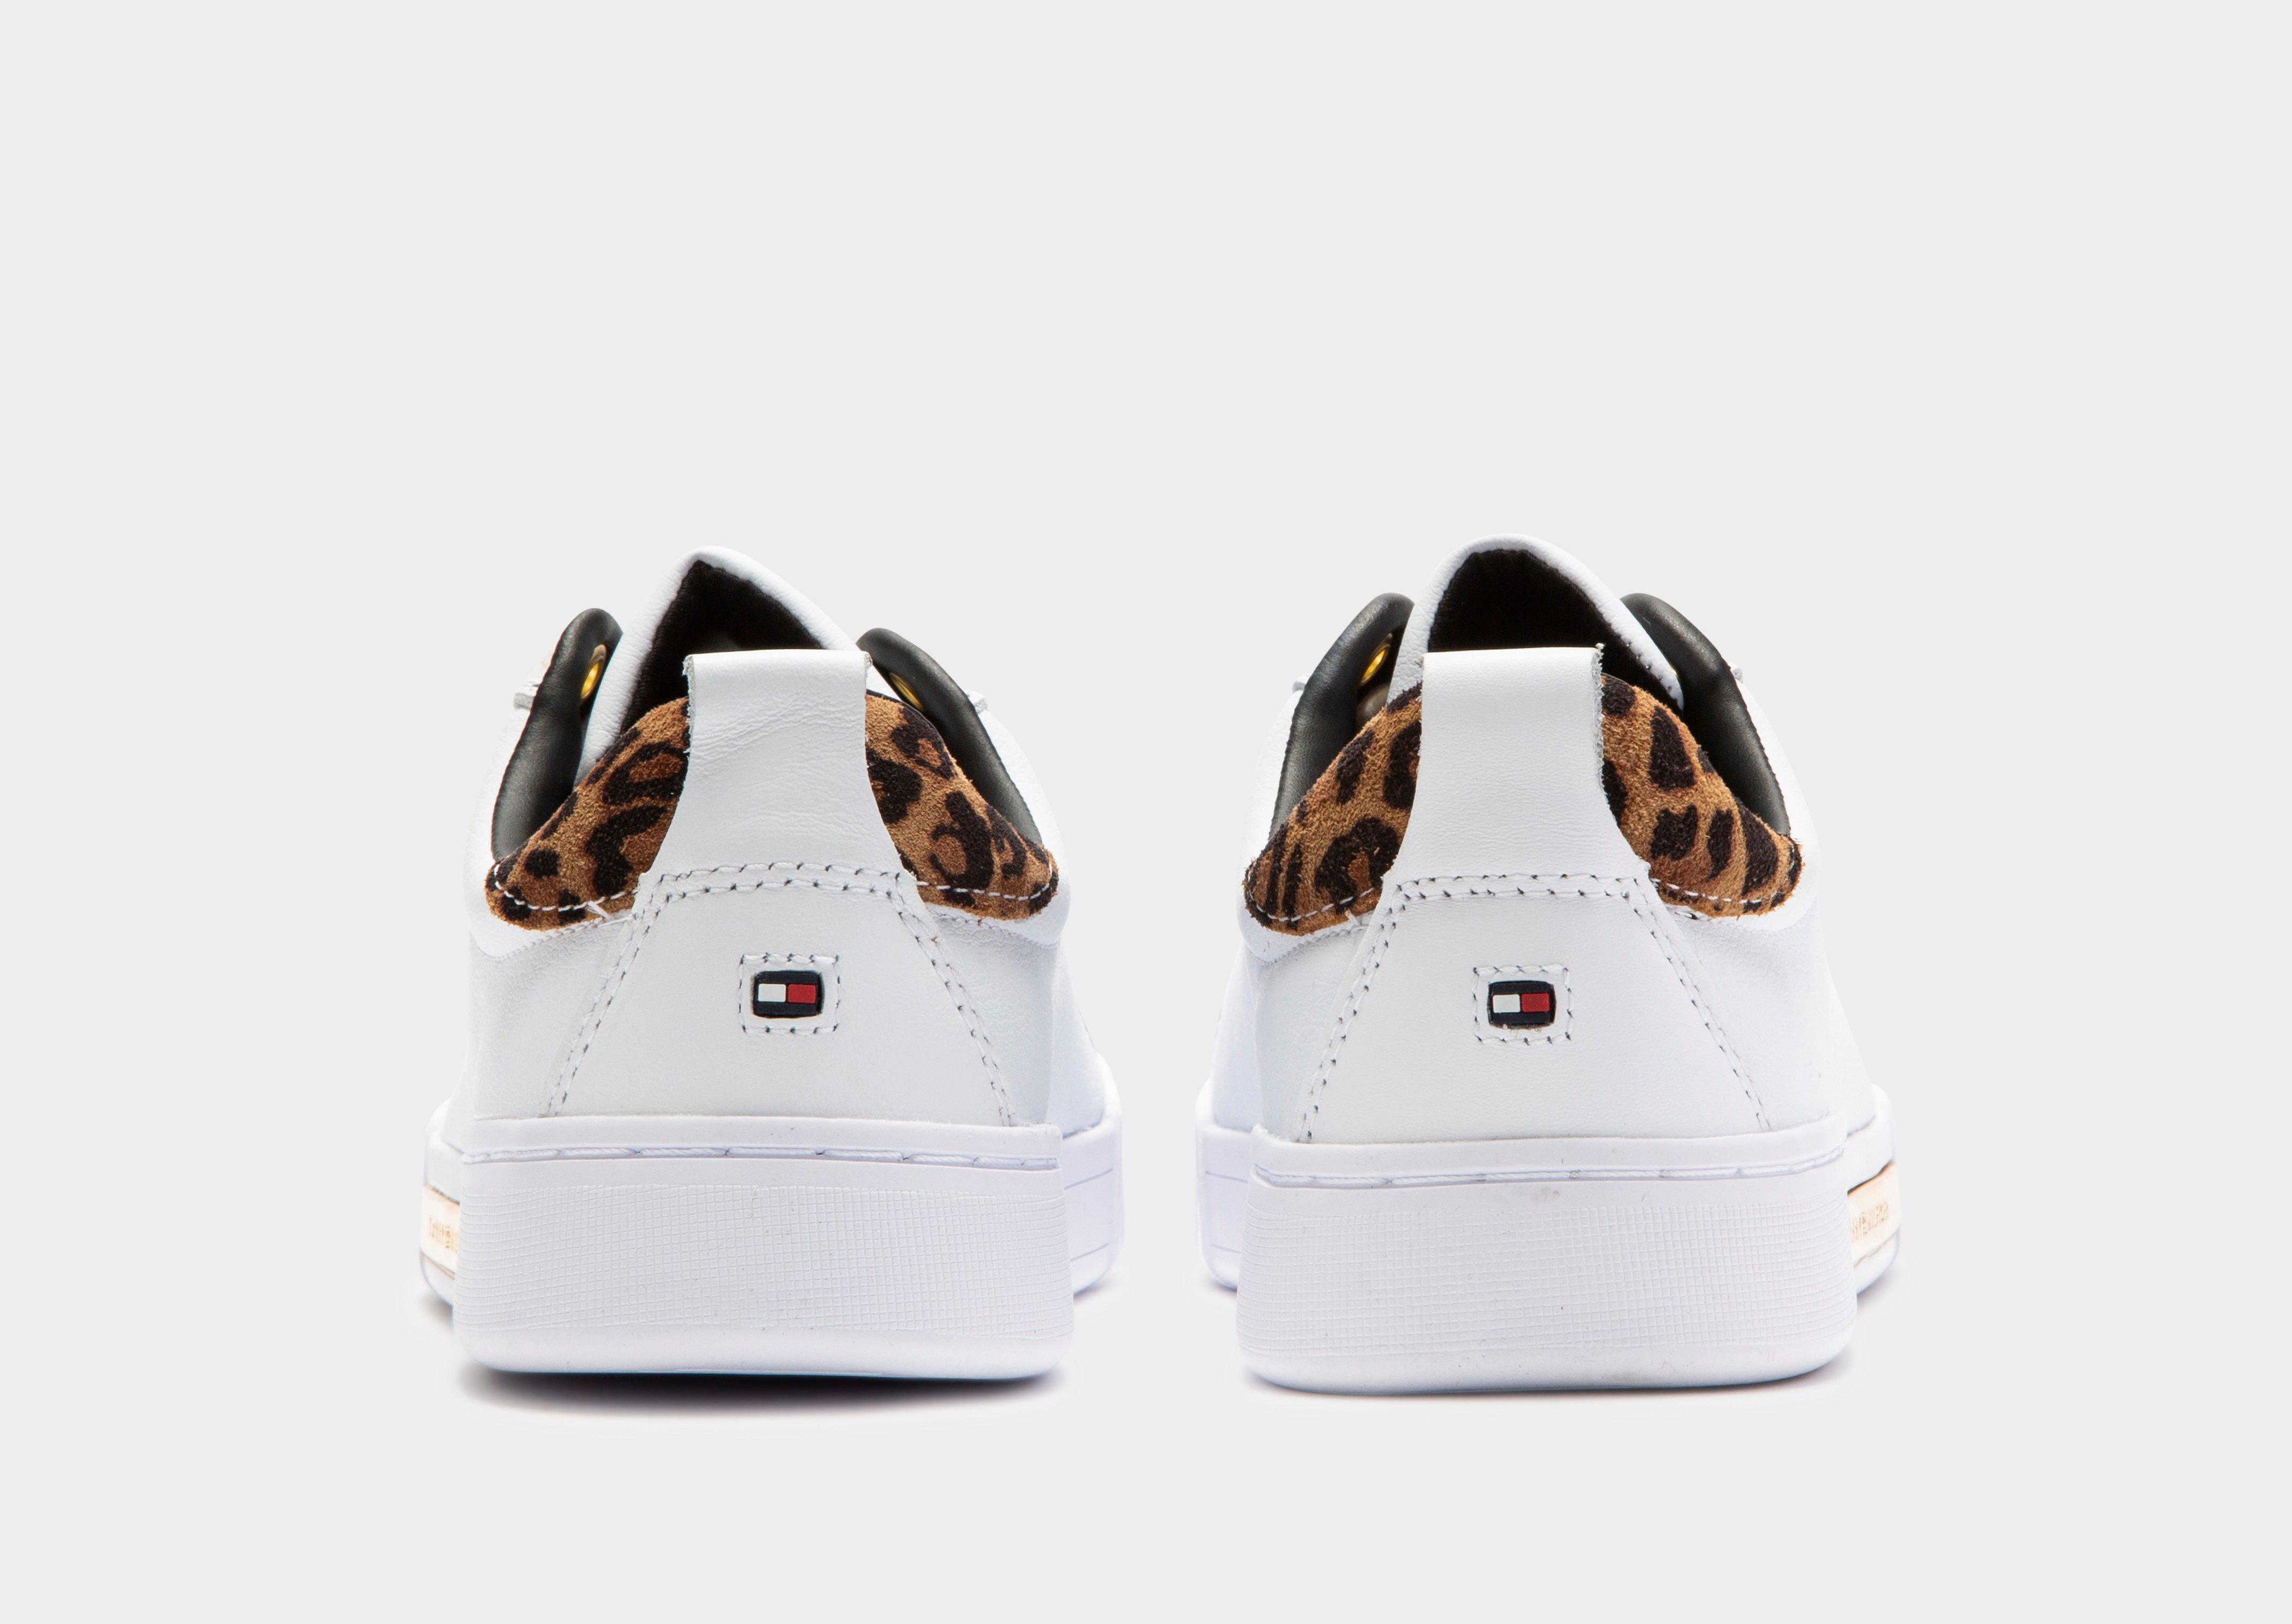 leopard print shoes australia